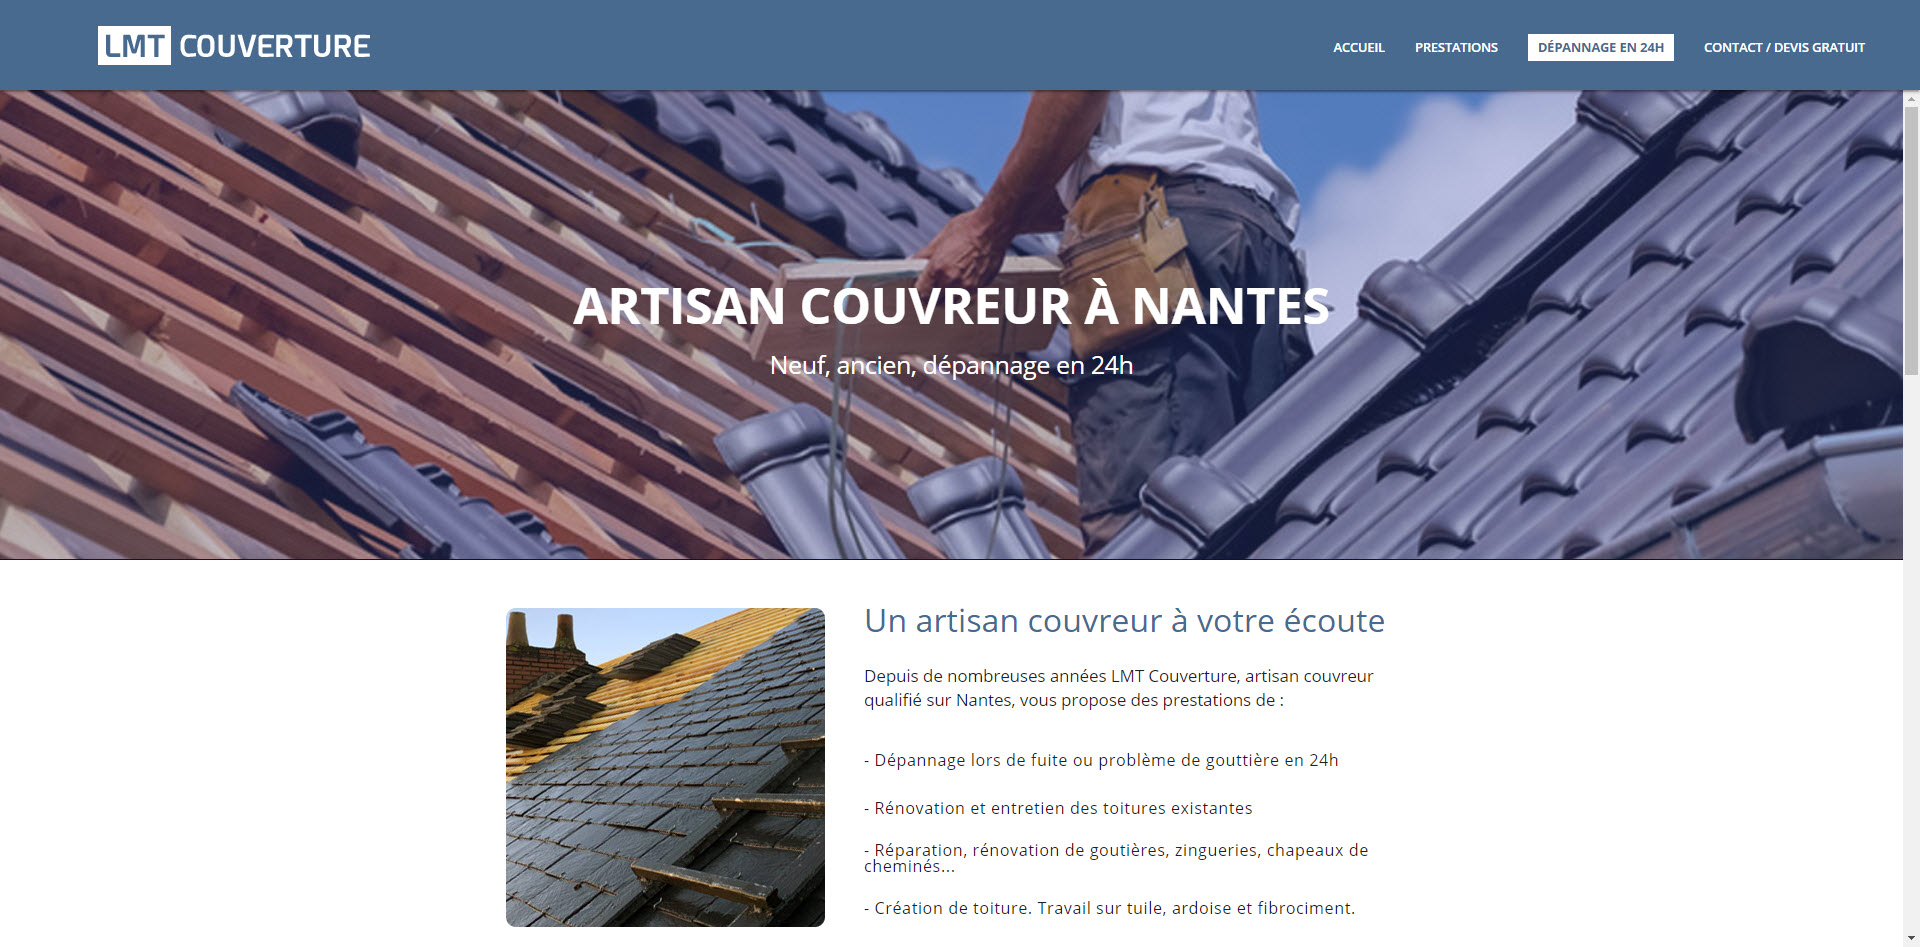 Une entreprise de couverture spécialiste des charpentes et des toits en zinc à Nantes